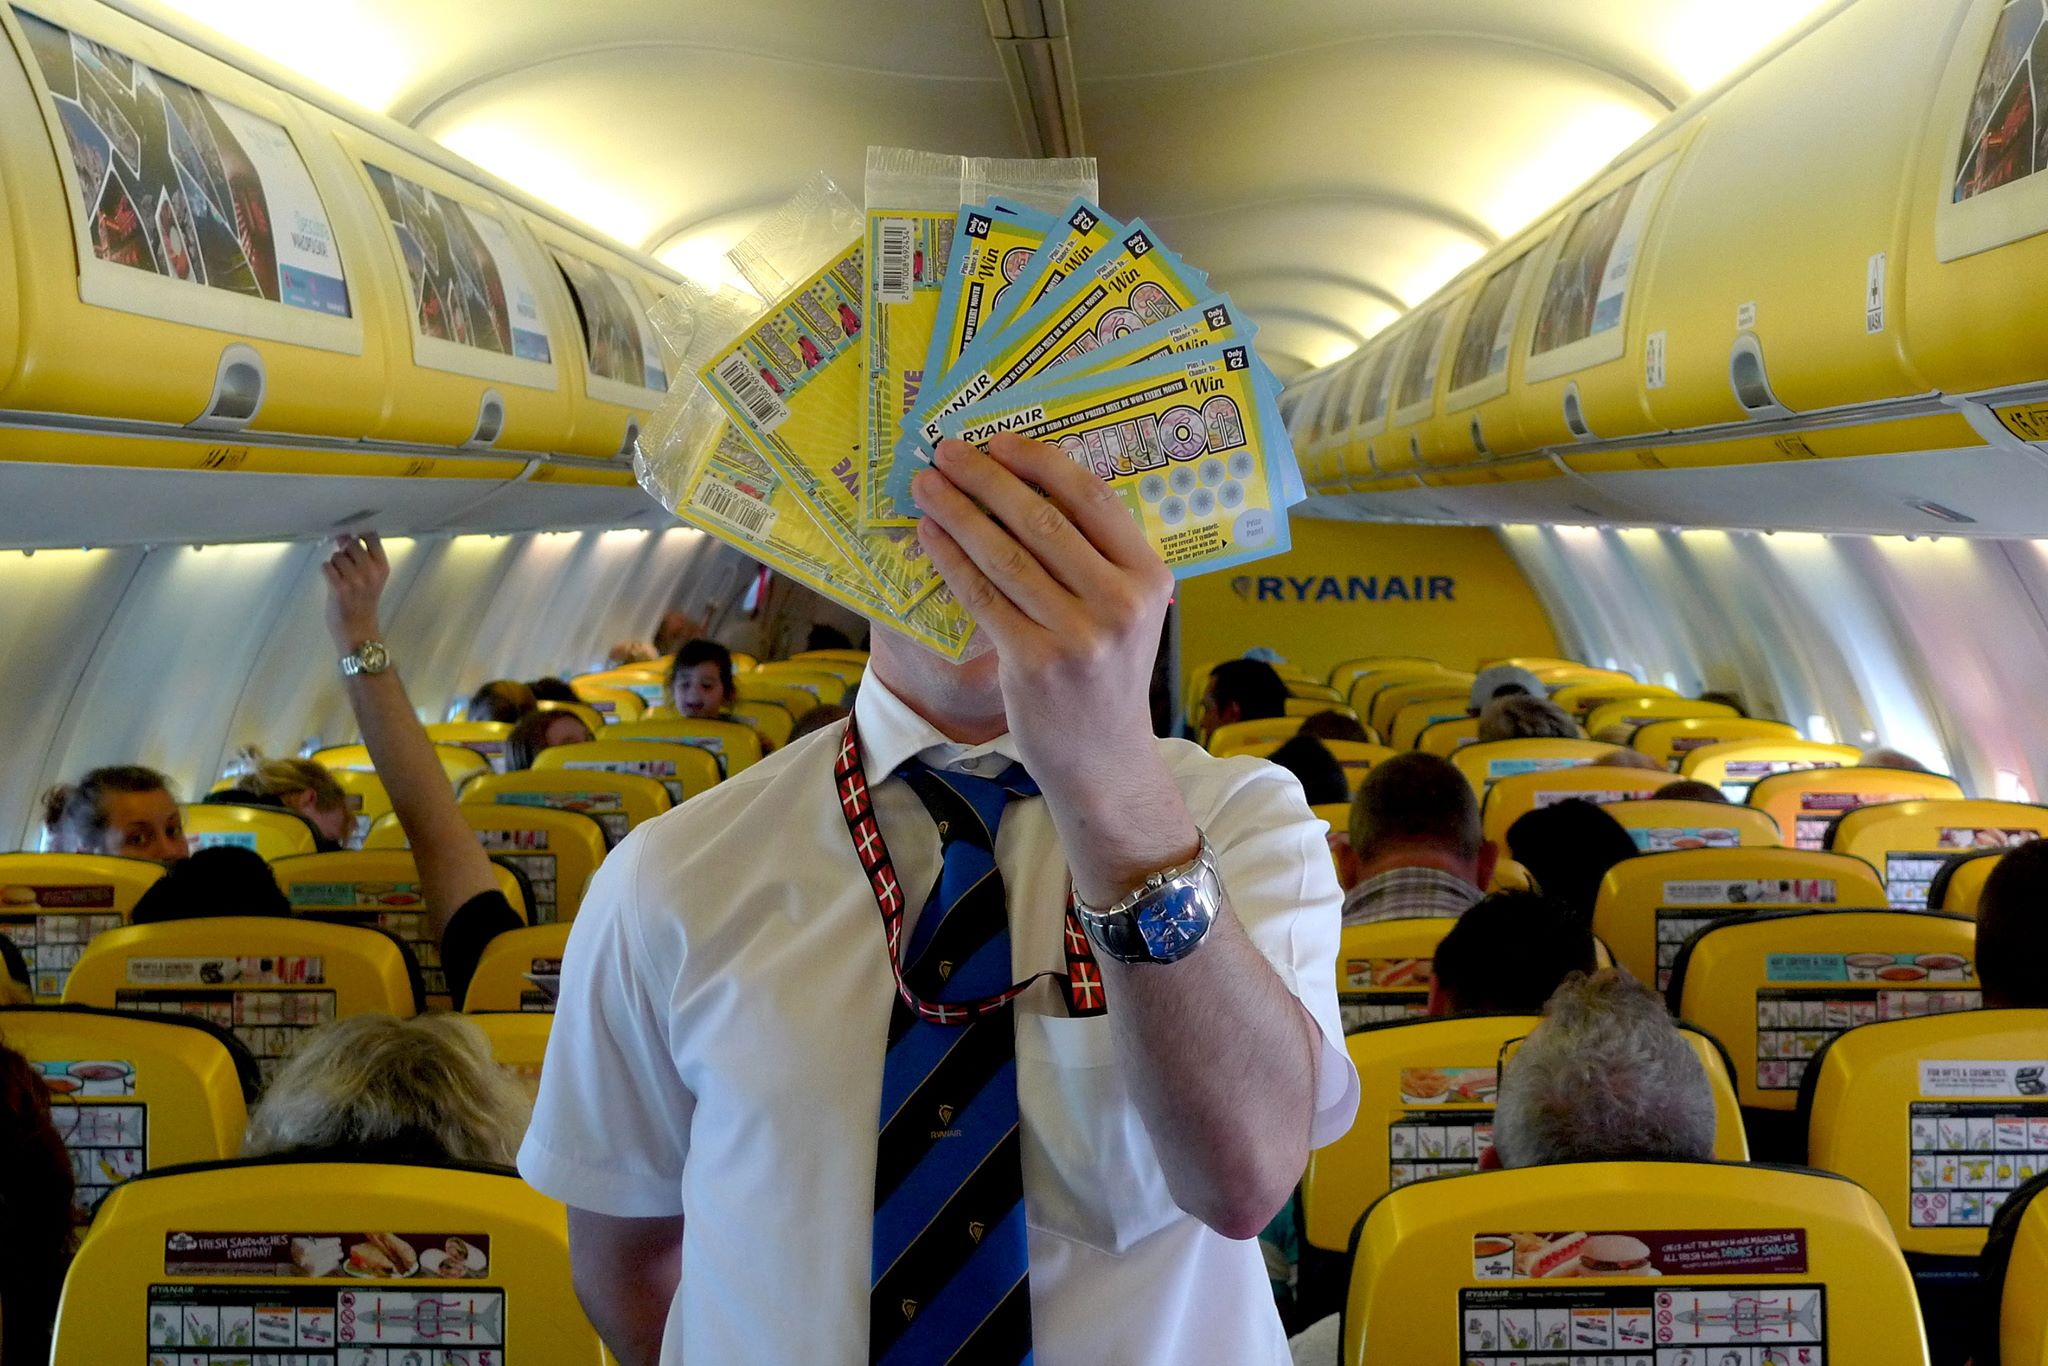 Que cachent les petits prix Maroc-Maroc de Ryanair?